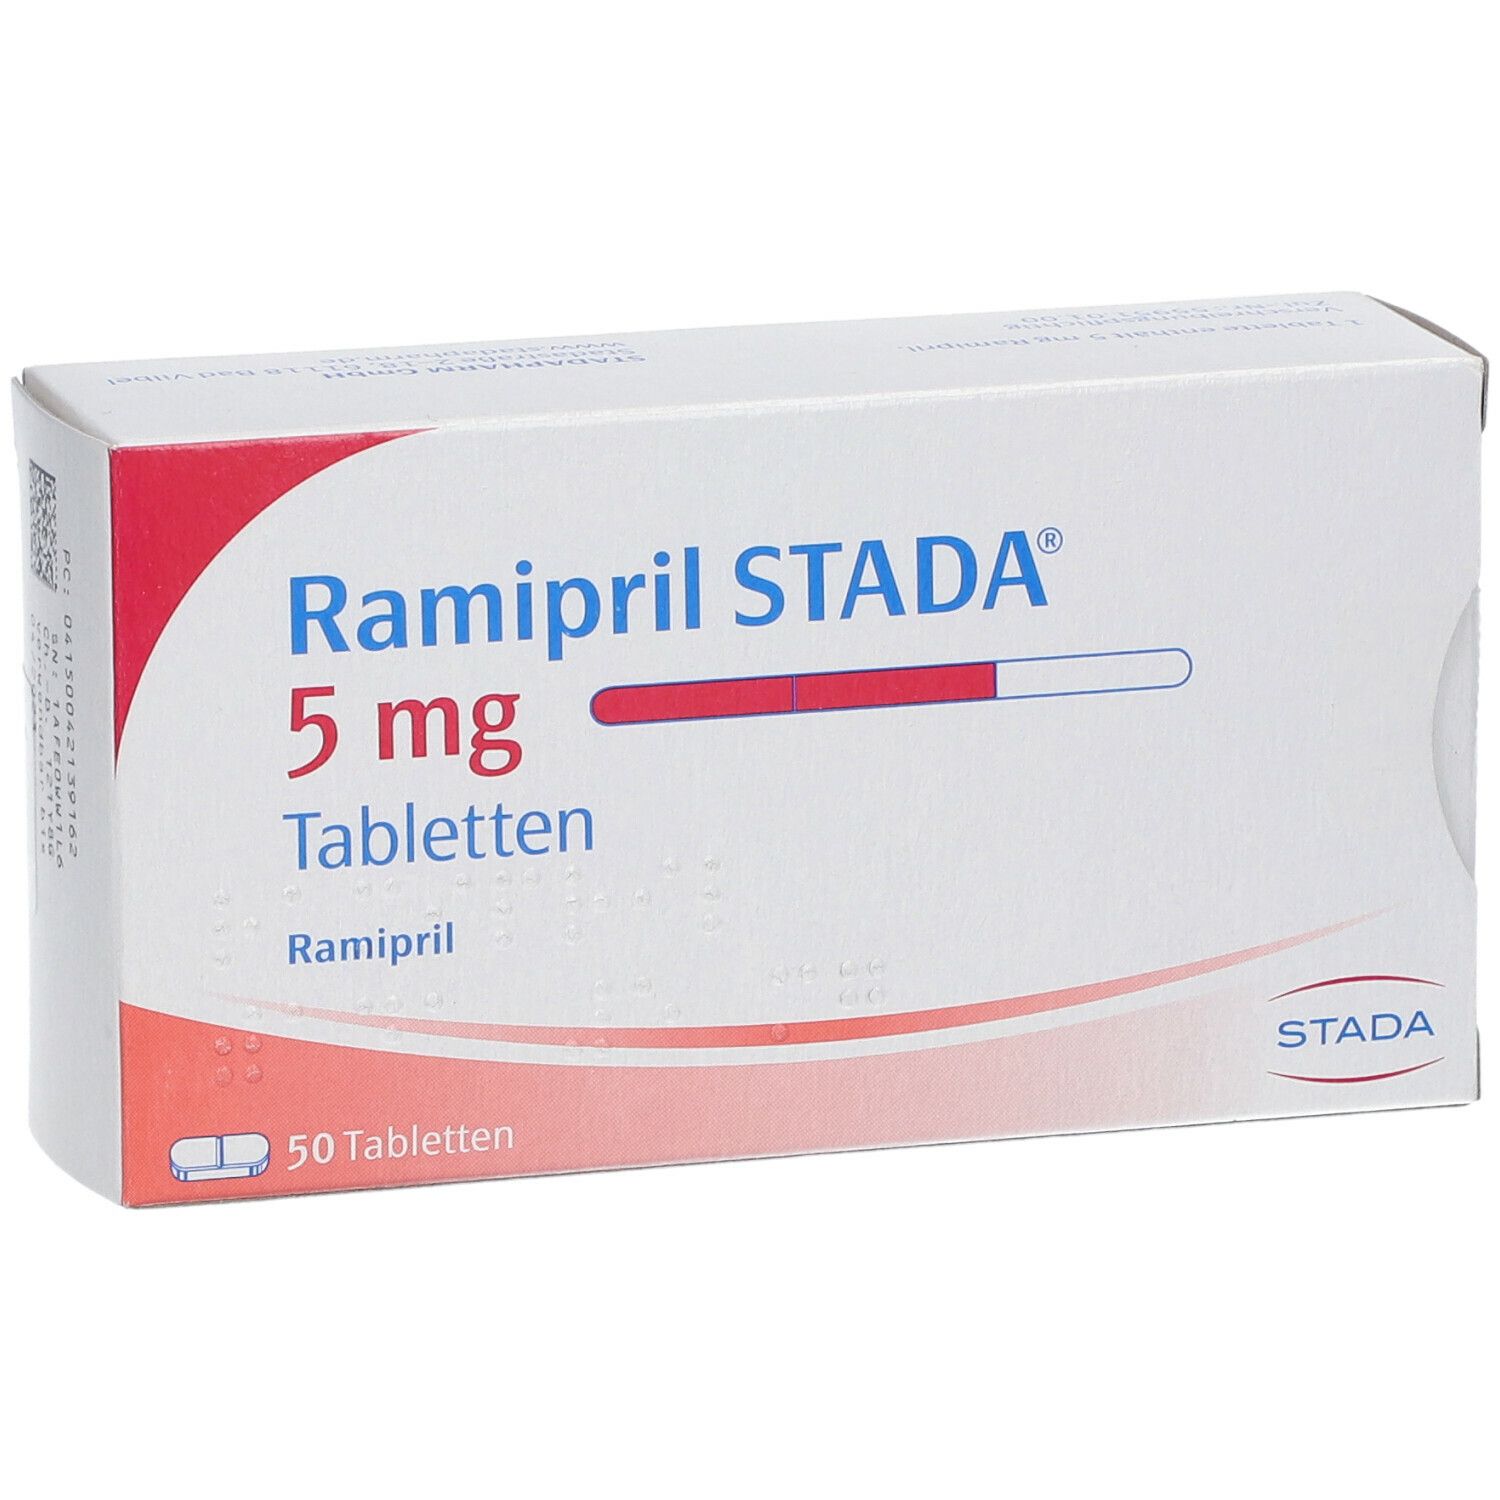 Ramipril STADA® 5 mg